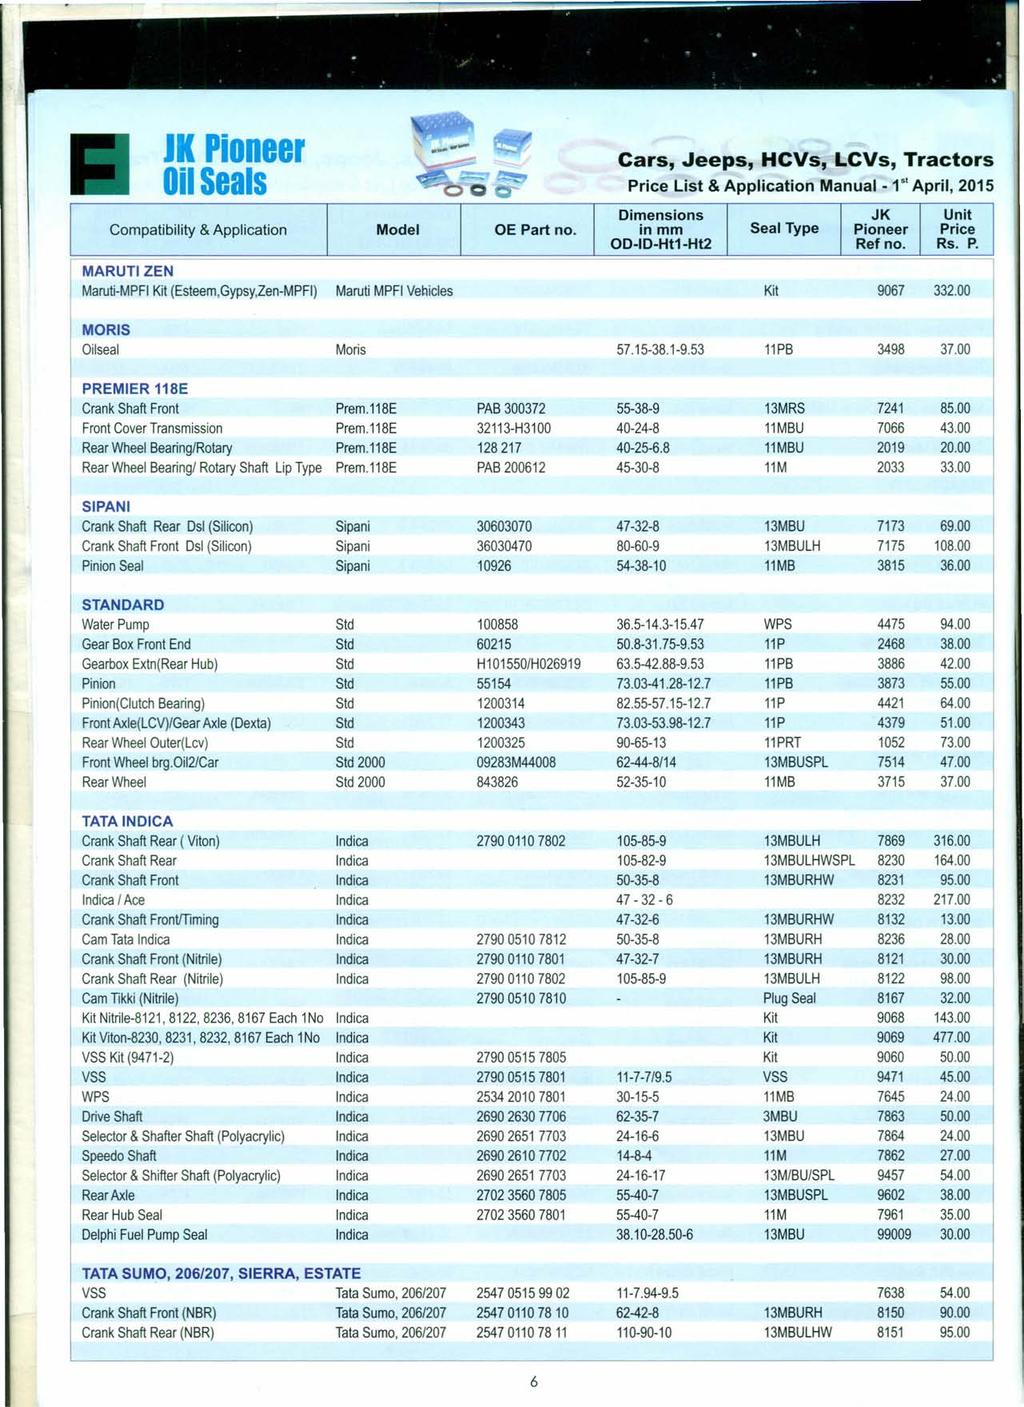 MARUTI IK Pioneer Price List & Application Manual - t" April, 2015 ZEN Maruti-MPFI Kit (Esteem,Gypsy,Zen-MPFI) Maruti MPFI Vehicles Kit 9067 332.00 MORIS Oilseal Moris 57.15-38.1-9.53 11PB 3498 37.